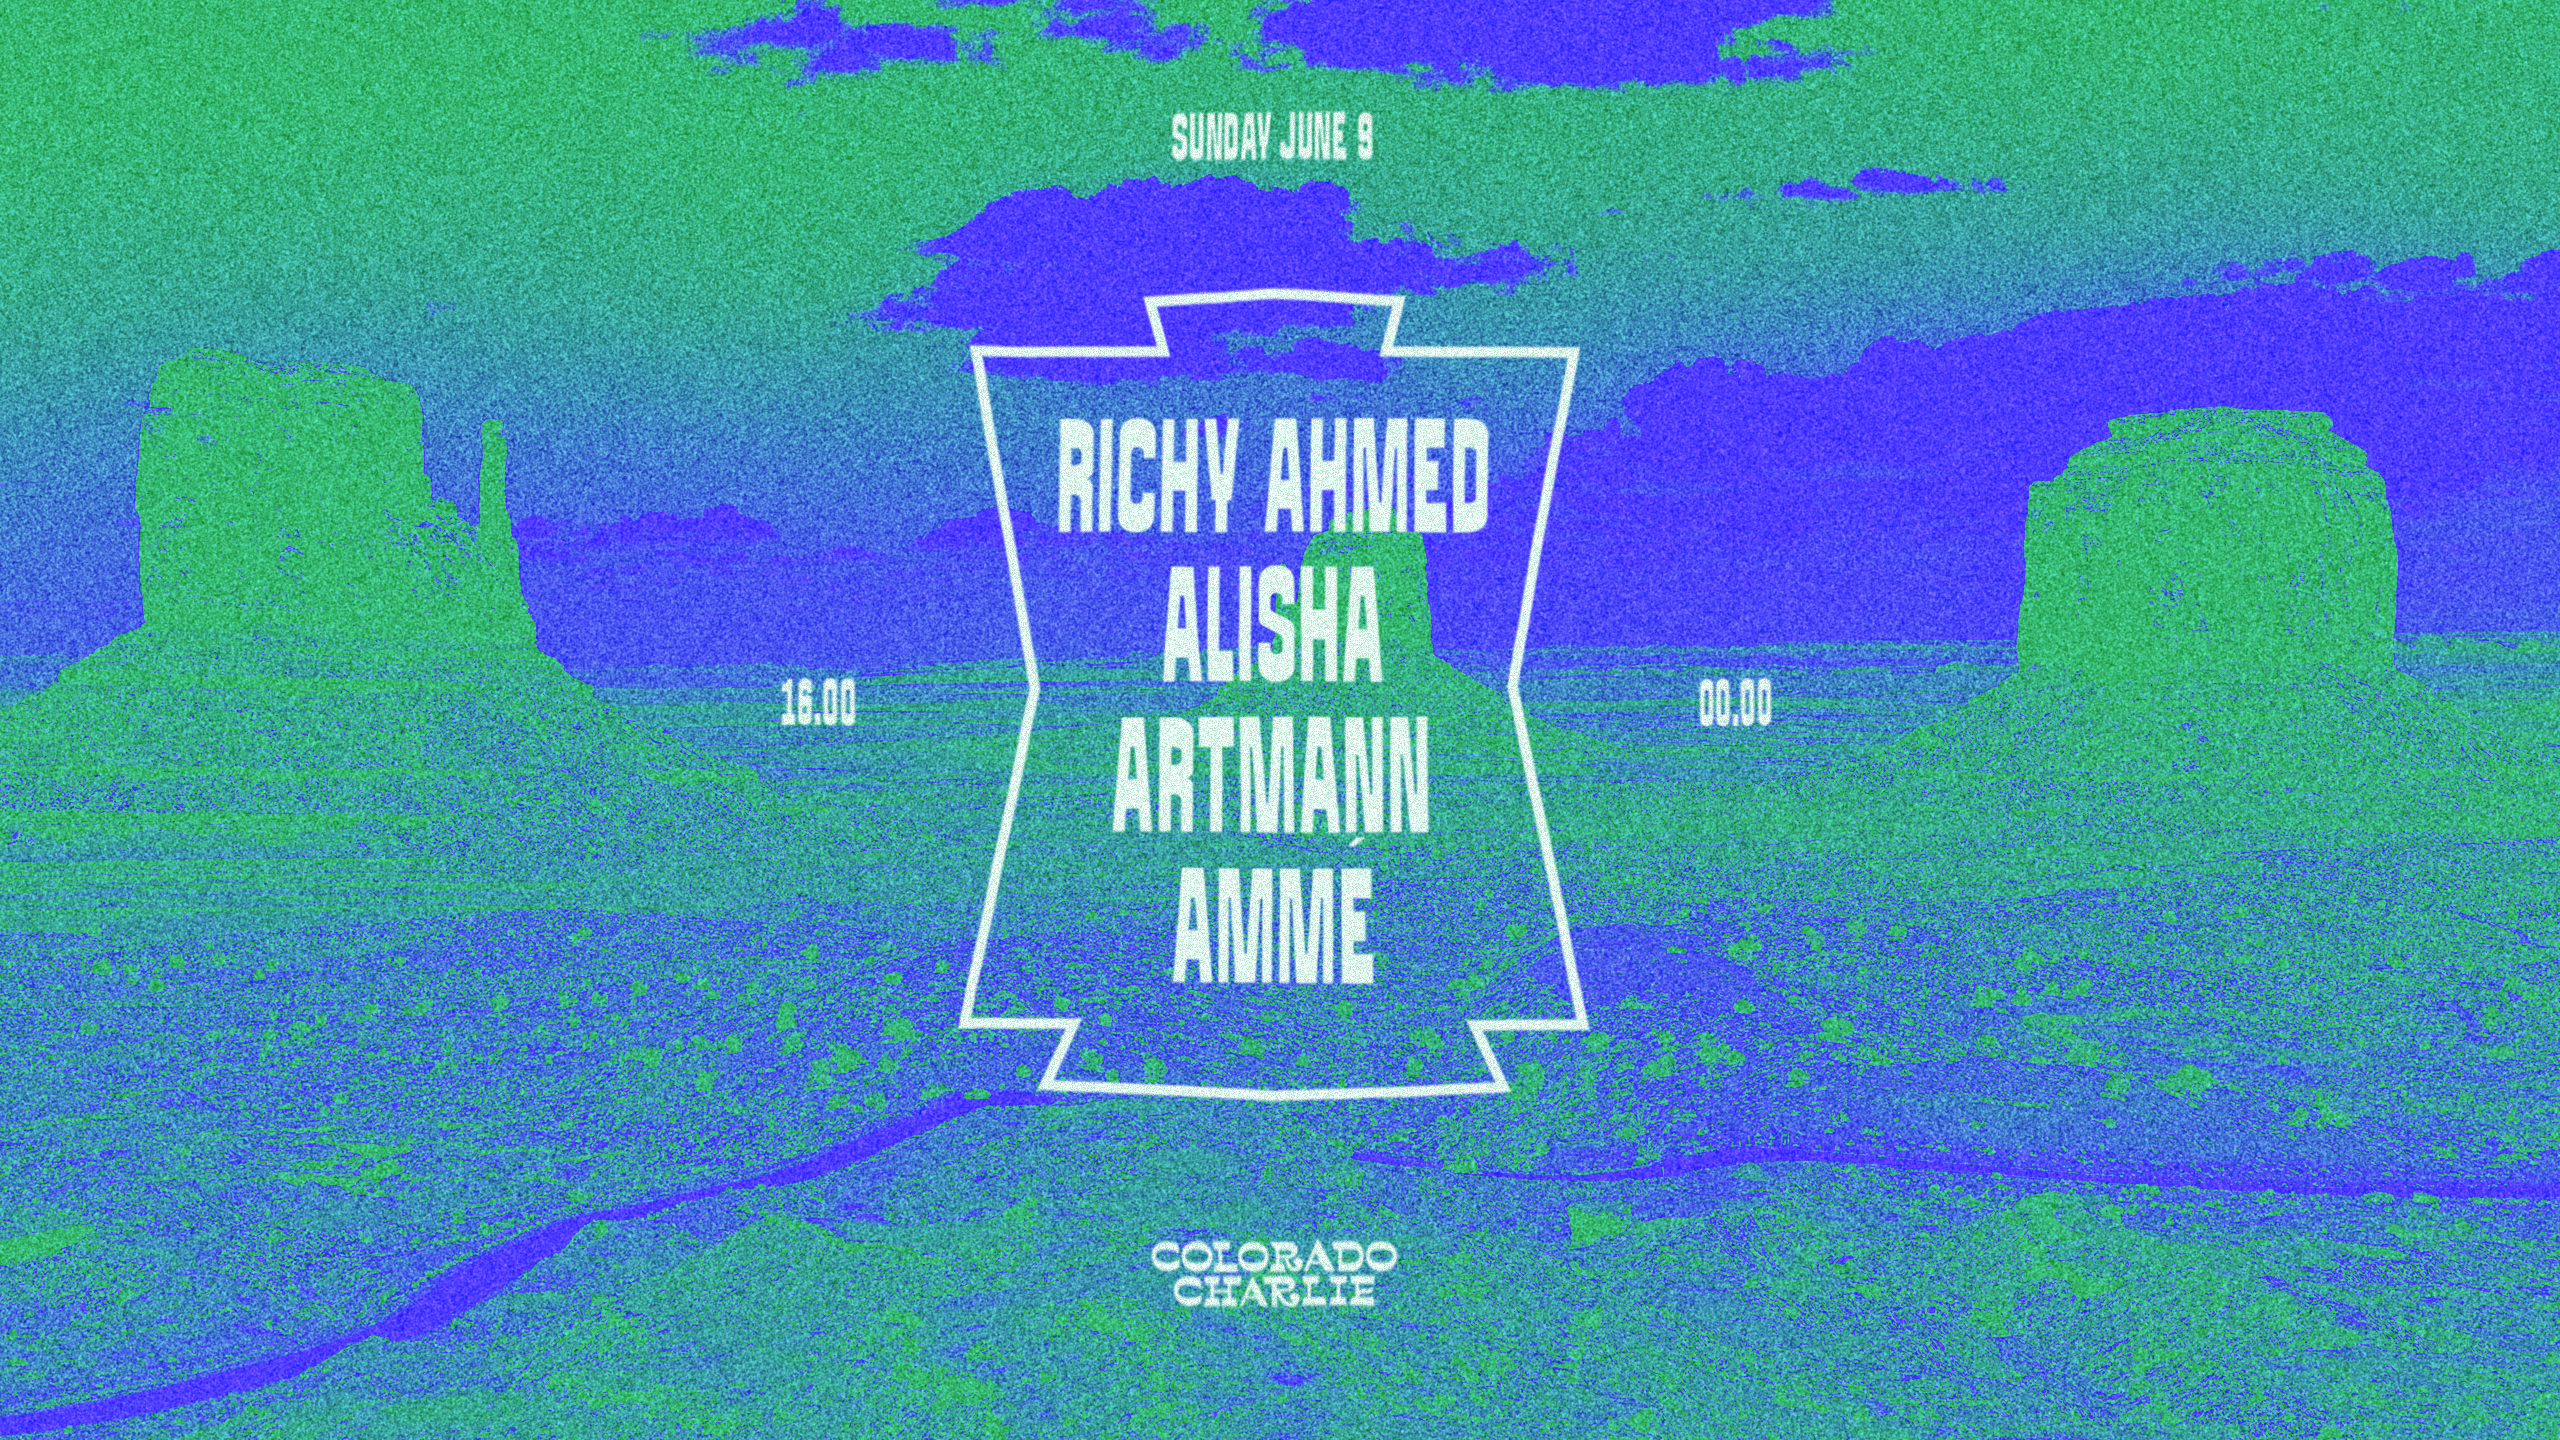 Colorado Charlie with Richy Ahmed, Alisha, Artmann, Ammé - フライヤー表